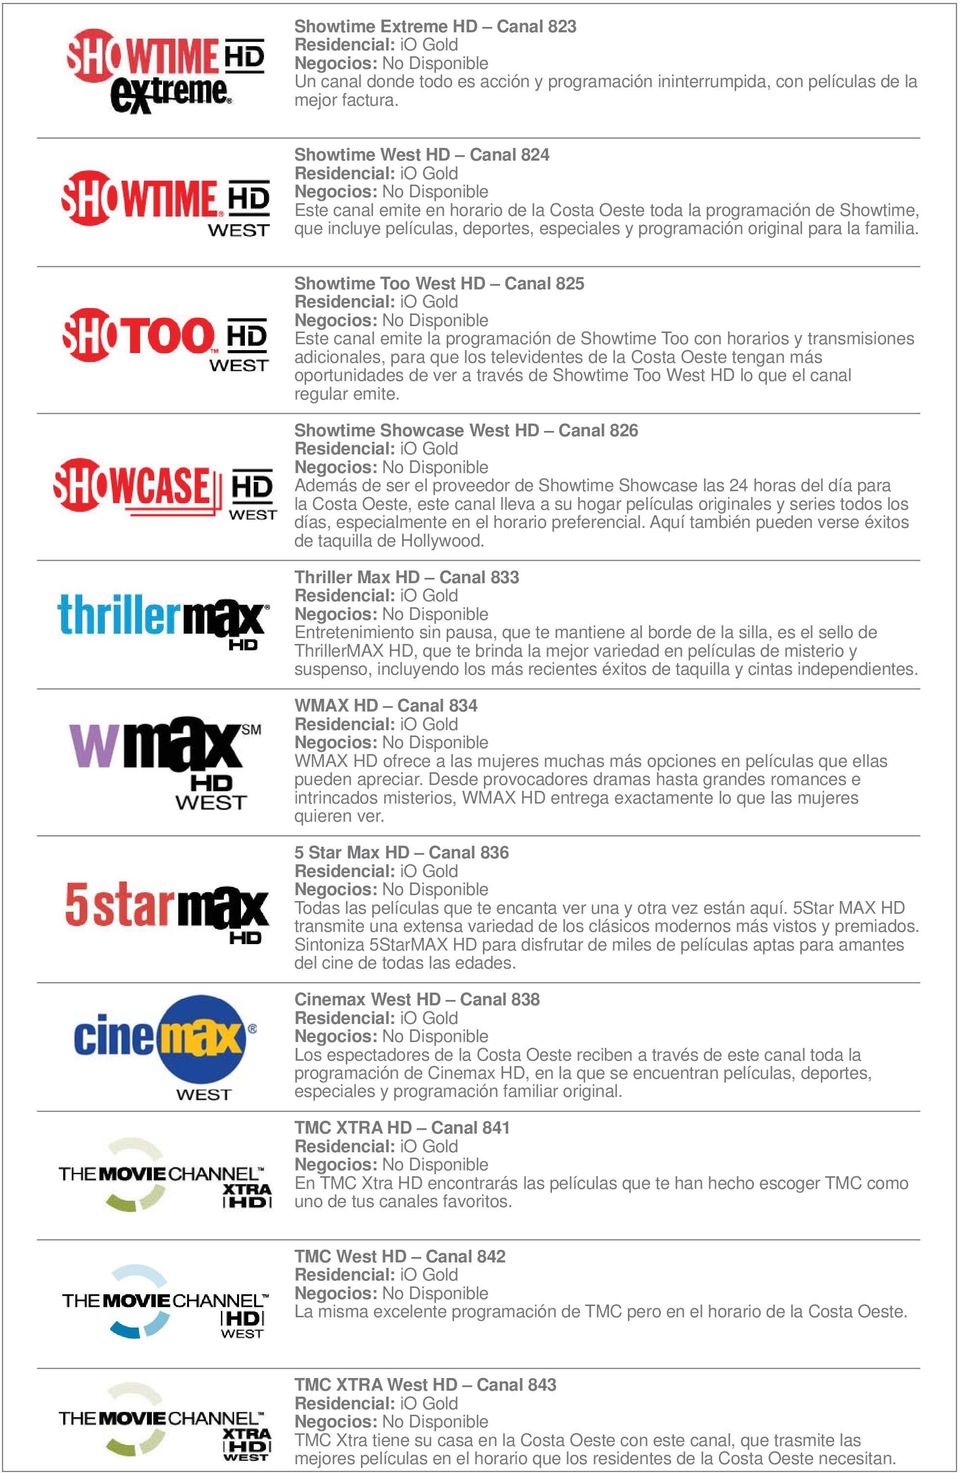 Showtime Too West HD Canal 825 Este canal emite la programación de Showtime Too con horarios y transmisiones adicionales, para que los televidentes de la Costa Oeste tengan más oportunidades de ver a